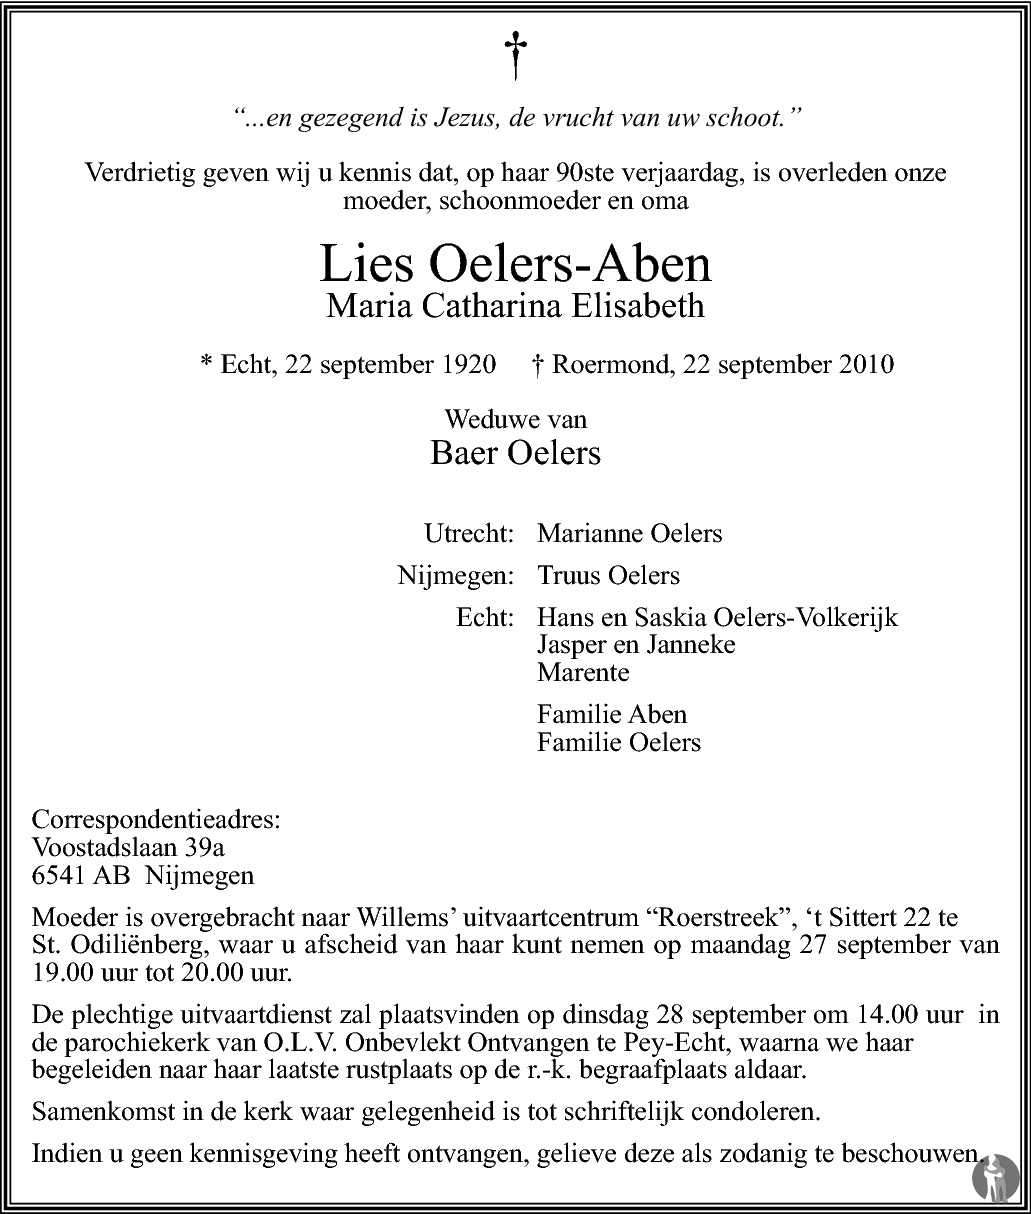 Overlijdensbericht van Maria Catharina Elisabeth (Lies) Oelers - Aben in De Limburger